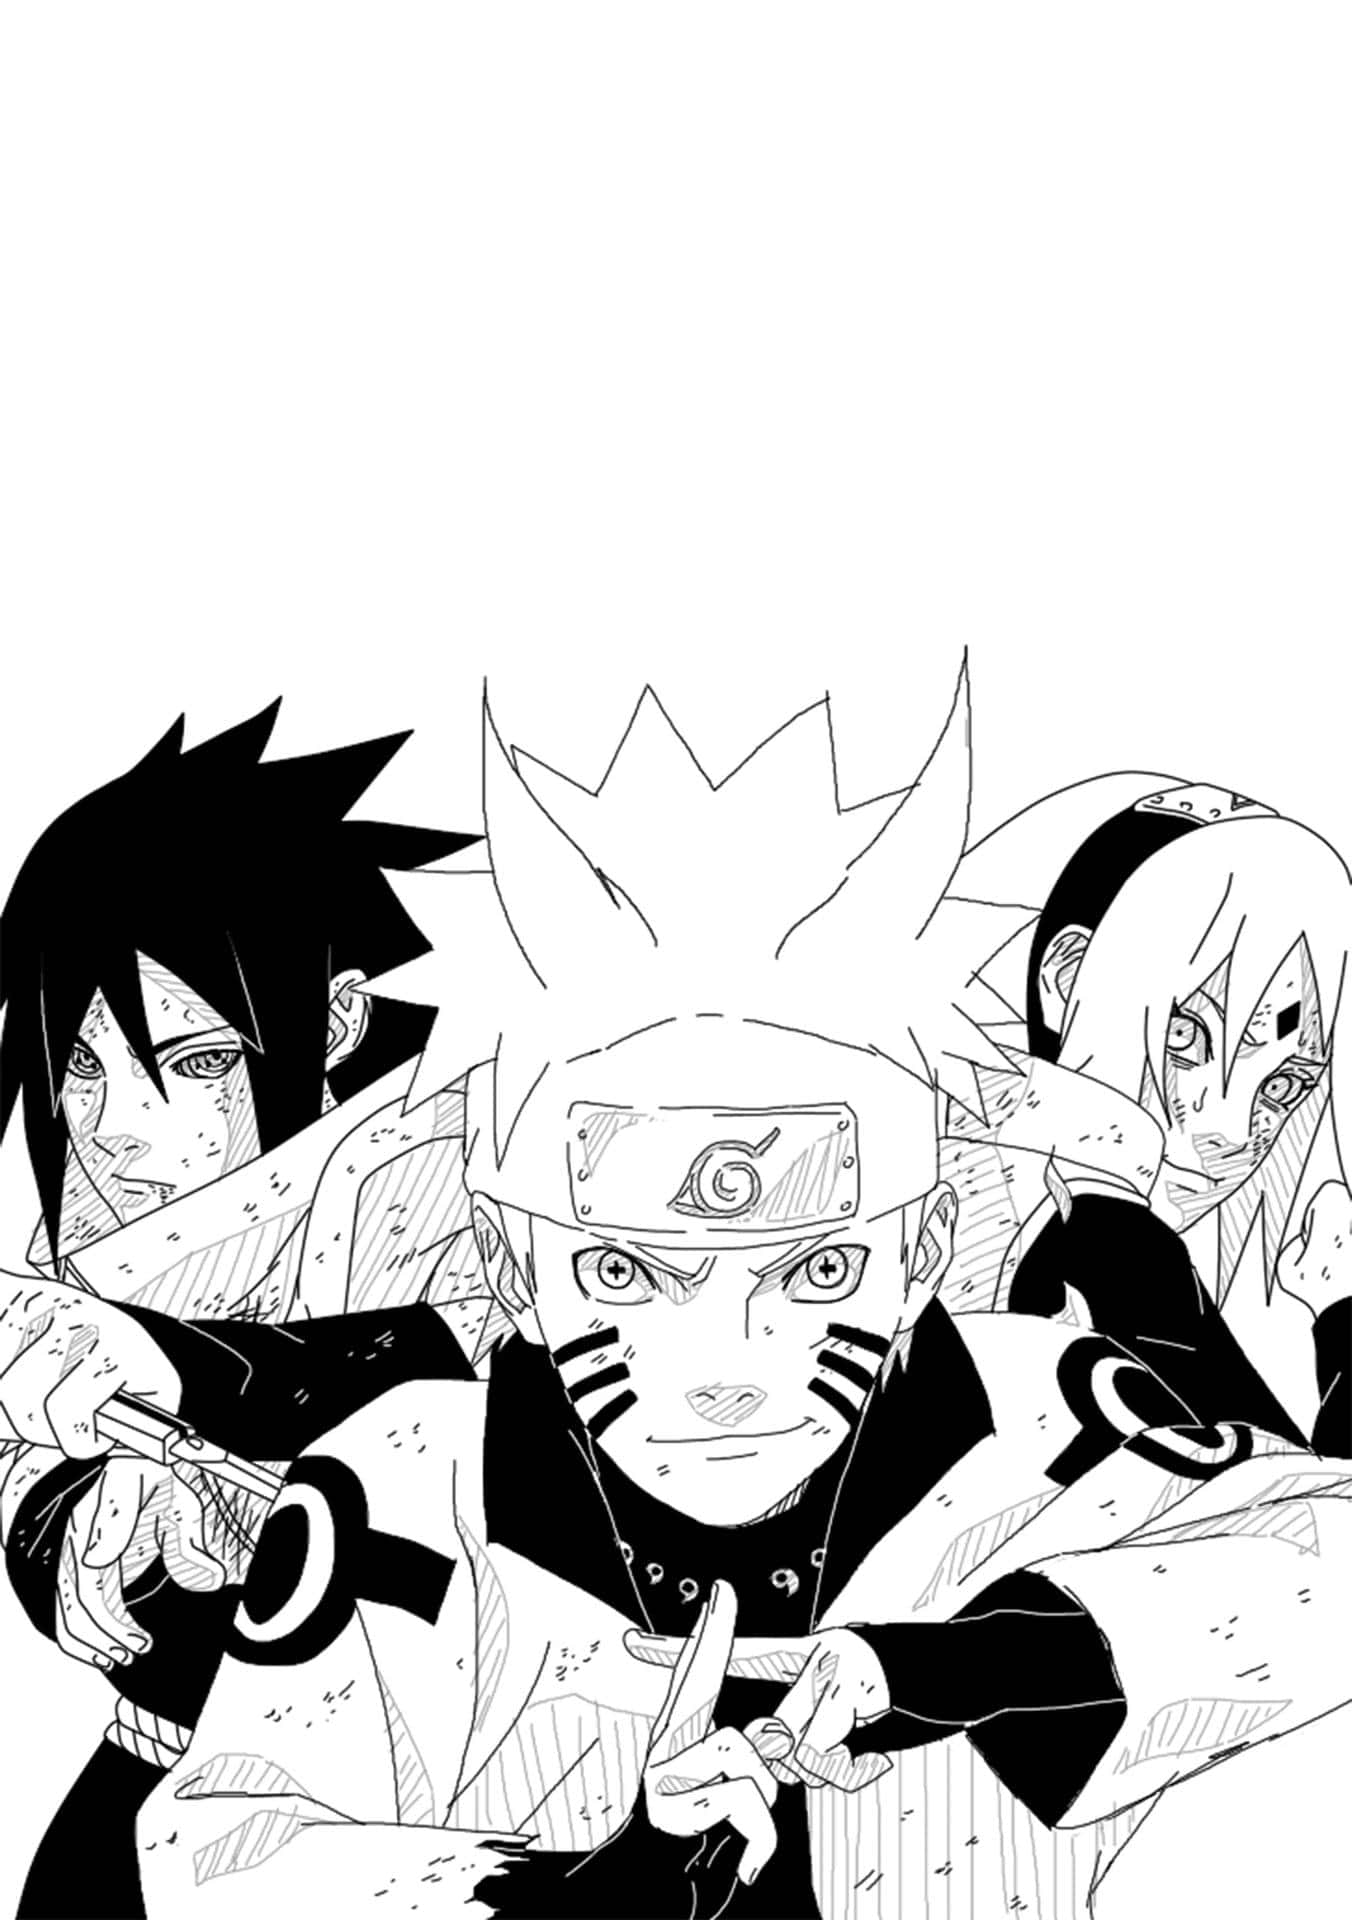 Gemeinsamsind Wir Team 7 Aus Naruto. Wallpaper